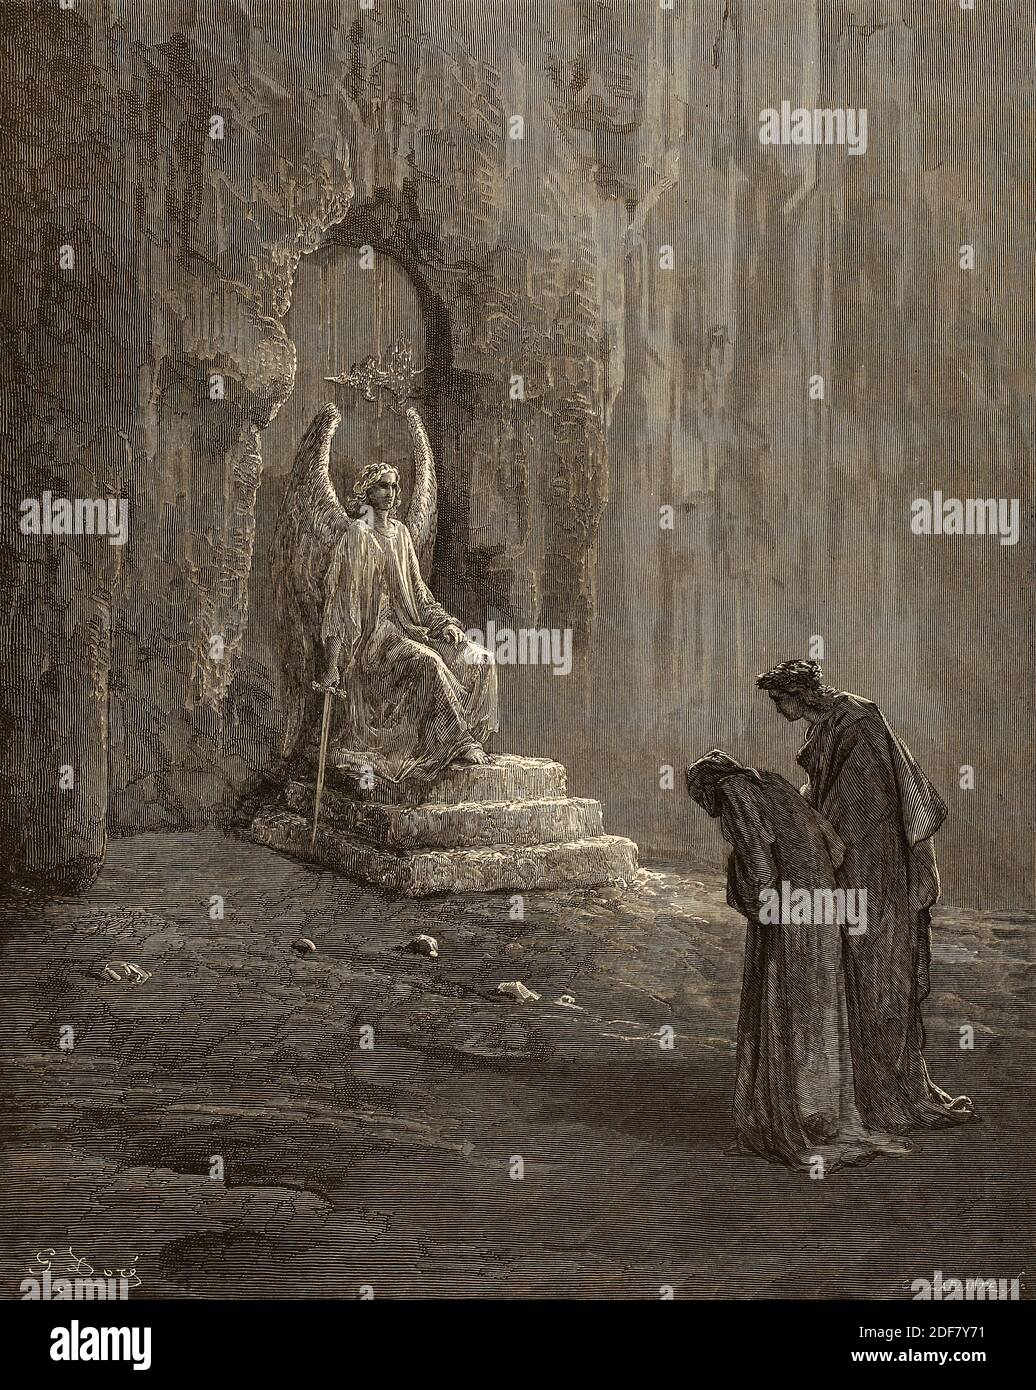 Dante - Divina Commedia - Purgatorio - Ilustración de Gustave Dorè - Canto IX - el ángel guardián Foto de stock